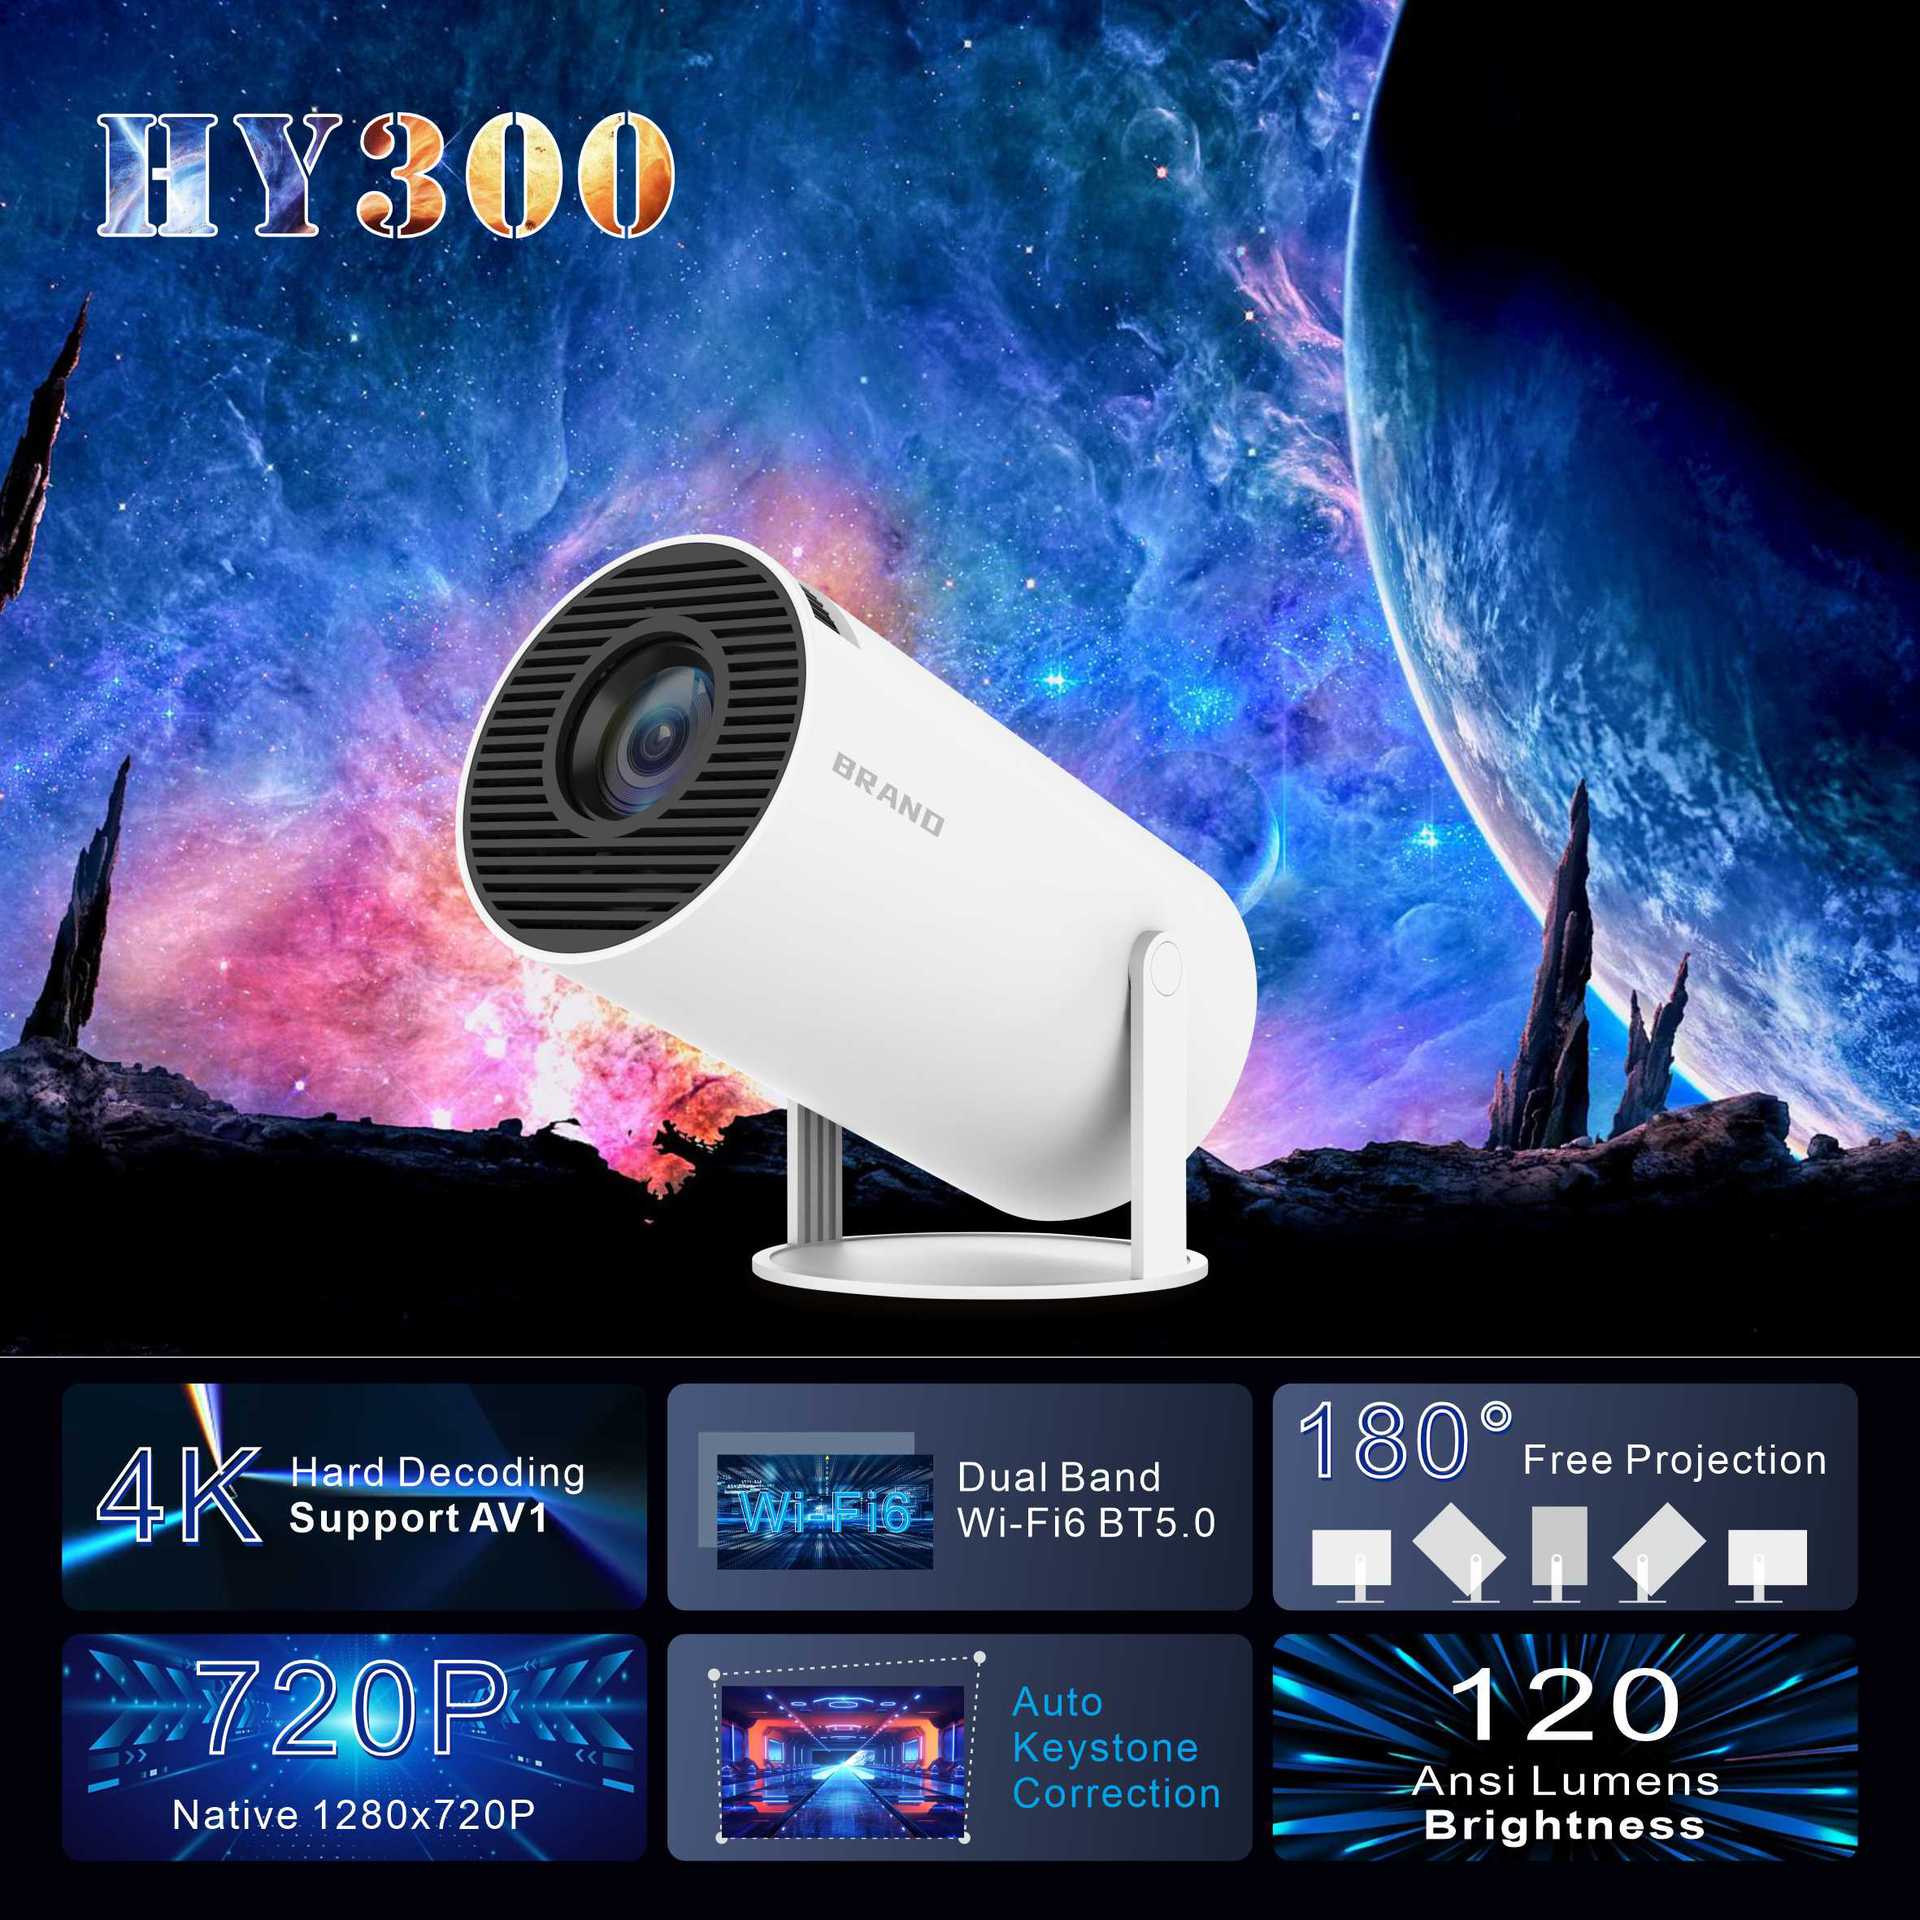 Proiettore transfrontaliero Hot Hy300 Home Home Theater Entertainment Proiettore portatile HD 1080P Commercio estero